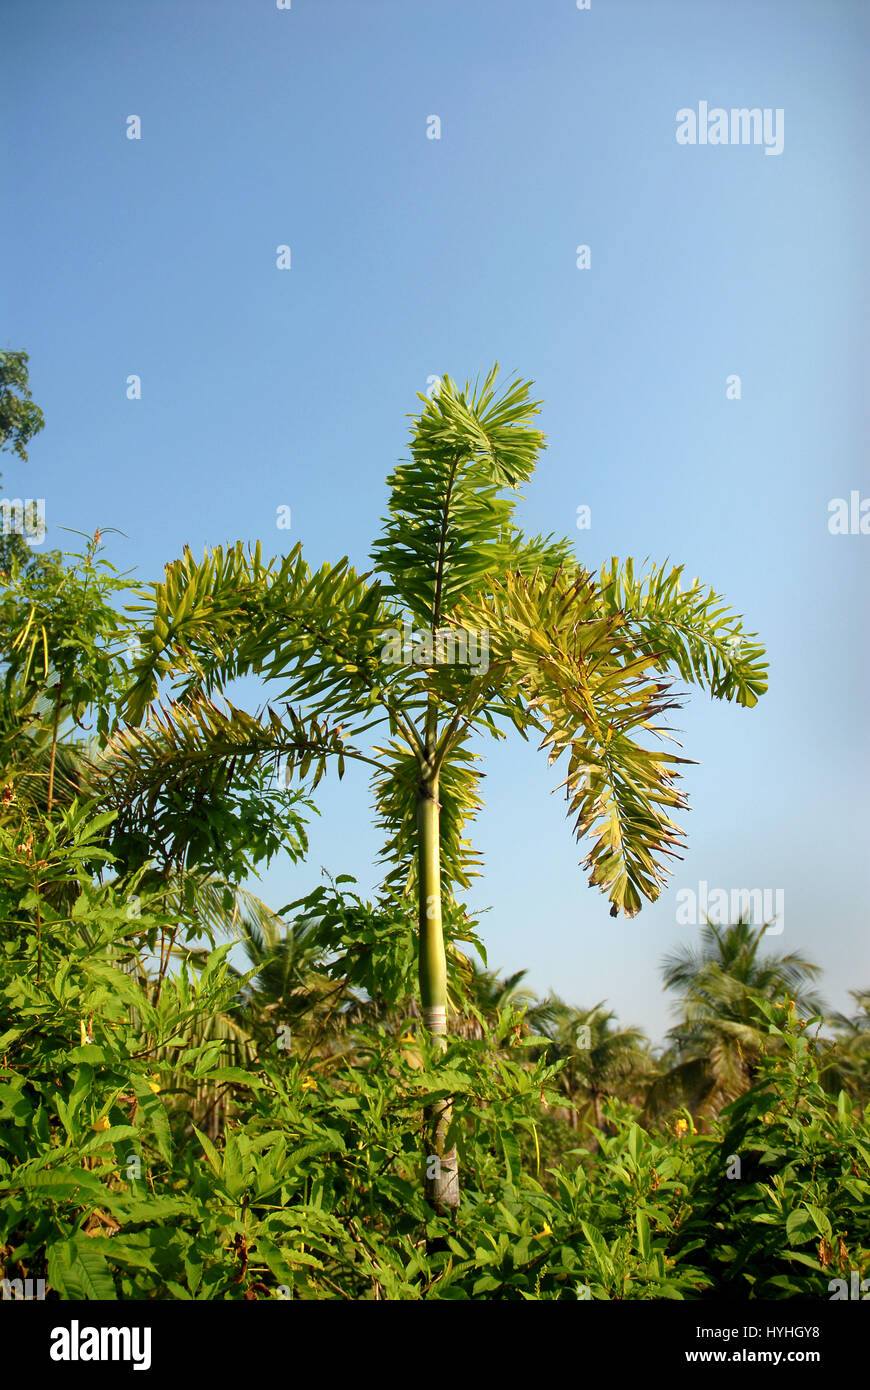 Areca nut tree Stock Photo